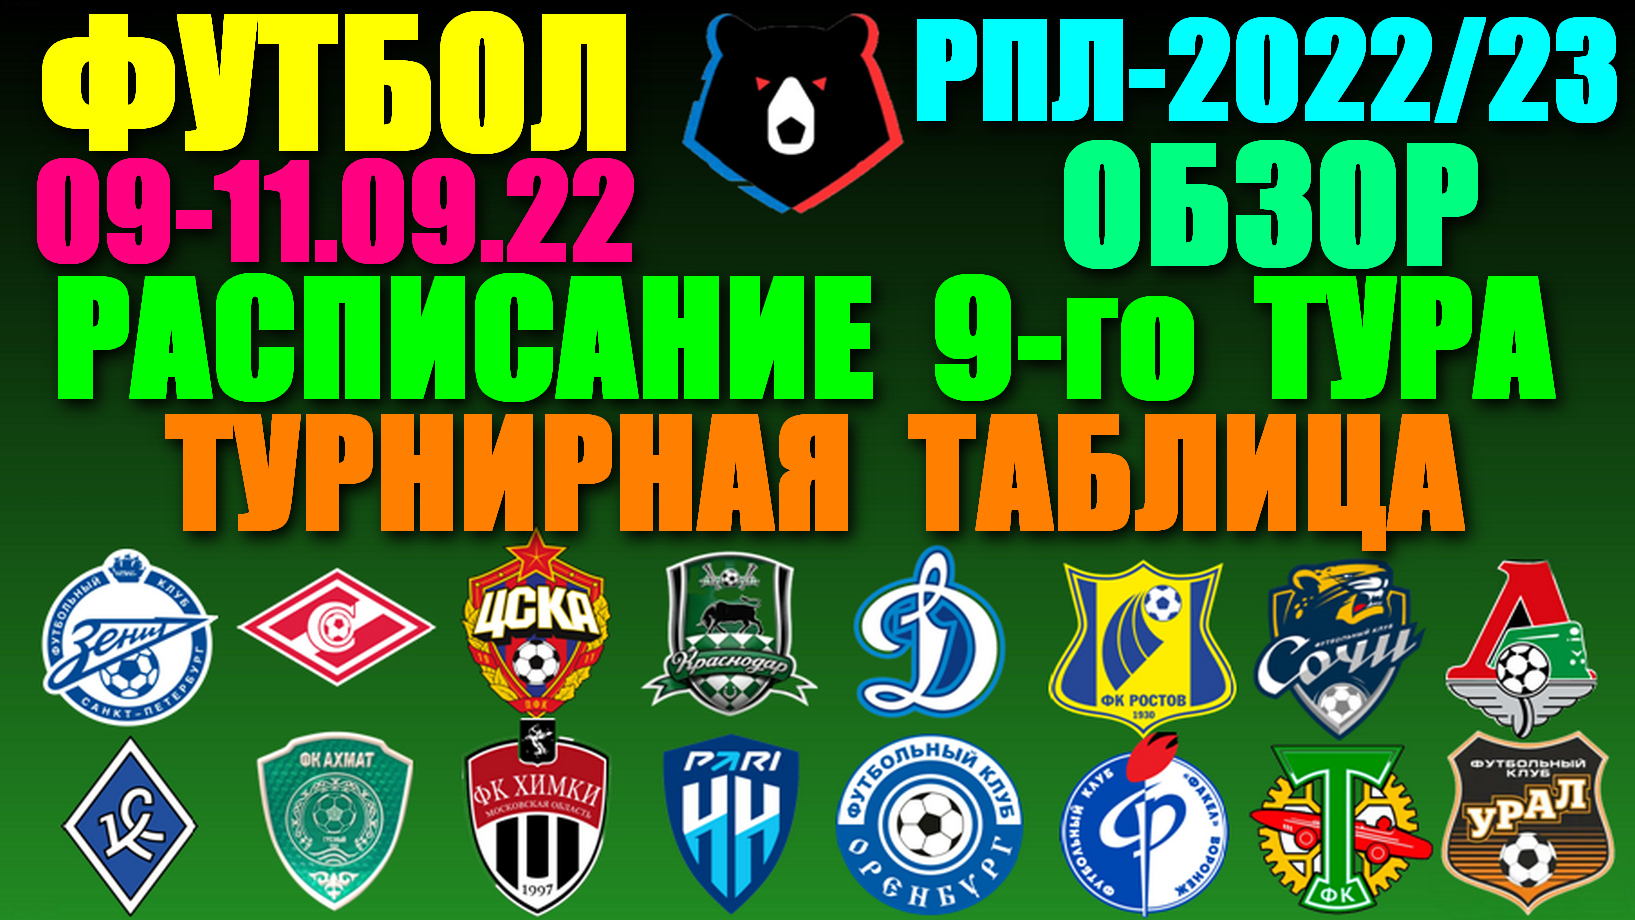 Футбол: Российская Премьер лига-2022/2023. Расписание 9-го тура 09 - 11.09.22. Турнирная таблица